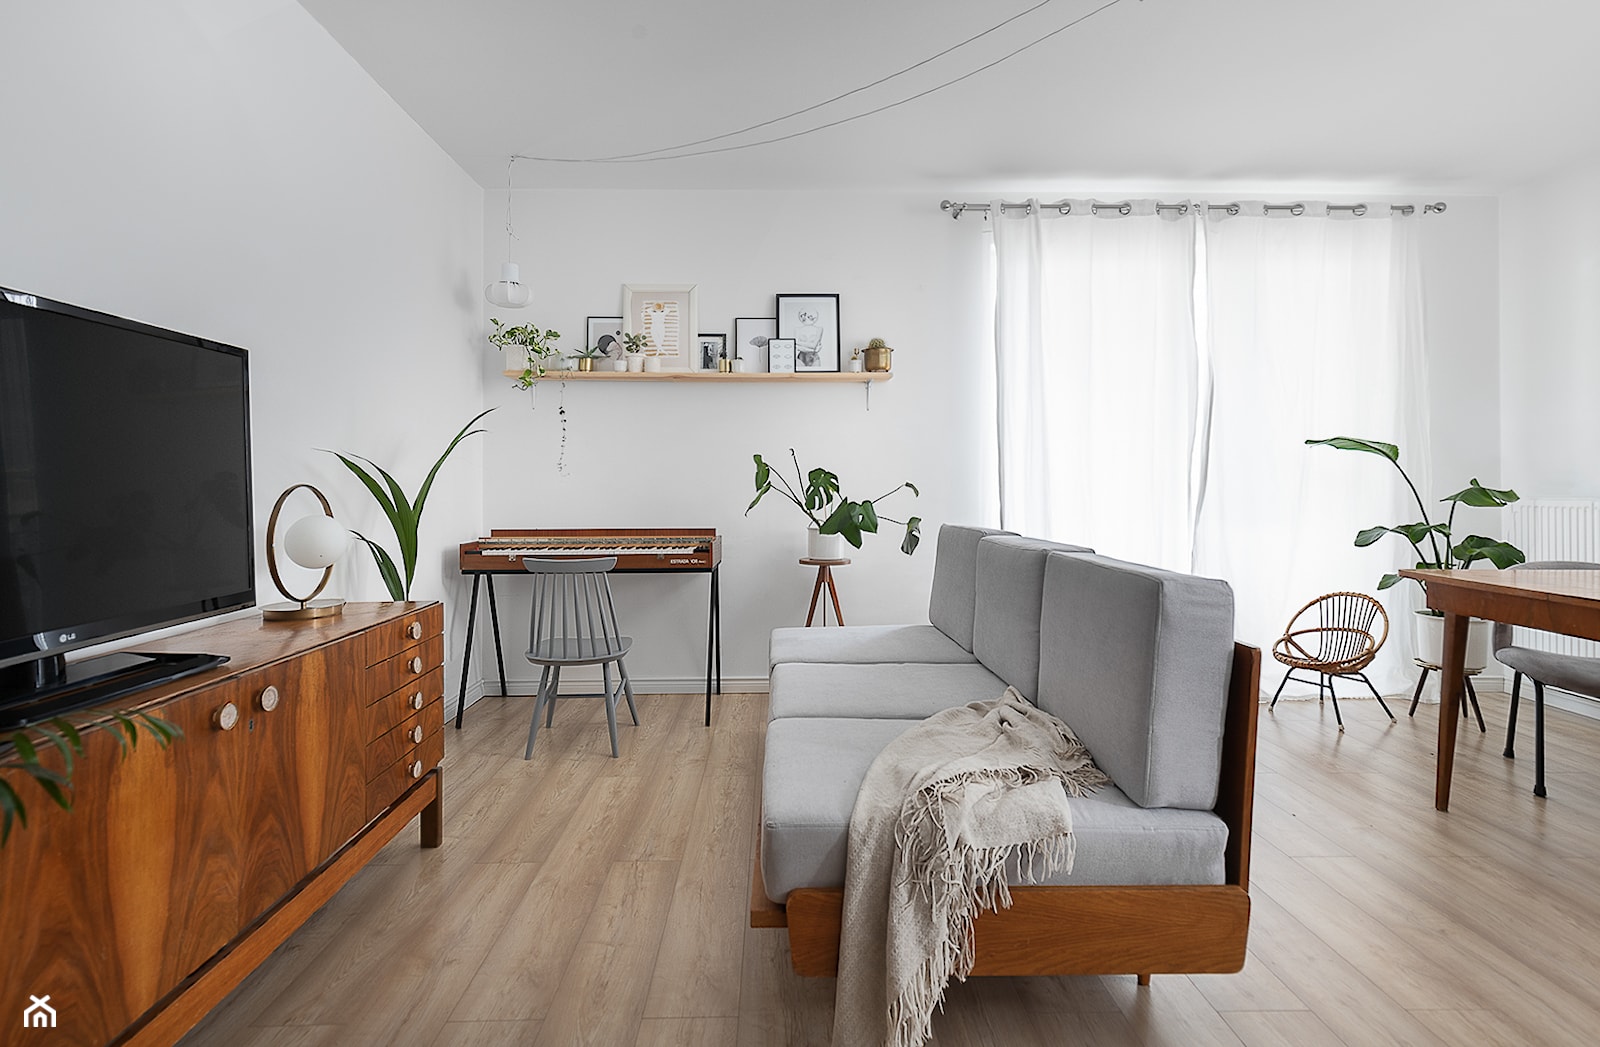 Mieszkanie w stylu Eco/vintage - Salon, styl vintage - zdjęcie od Mikołaj Dąbrowski - Homebook